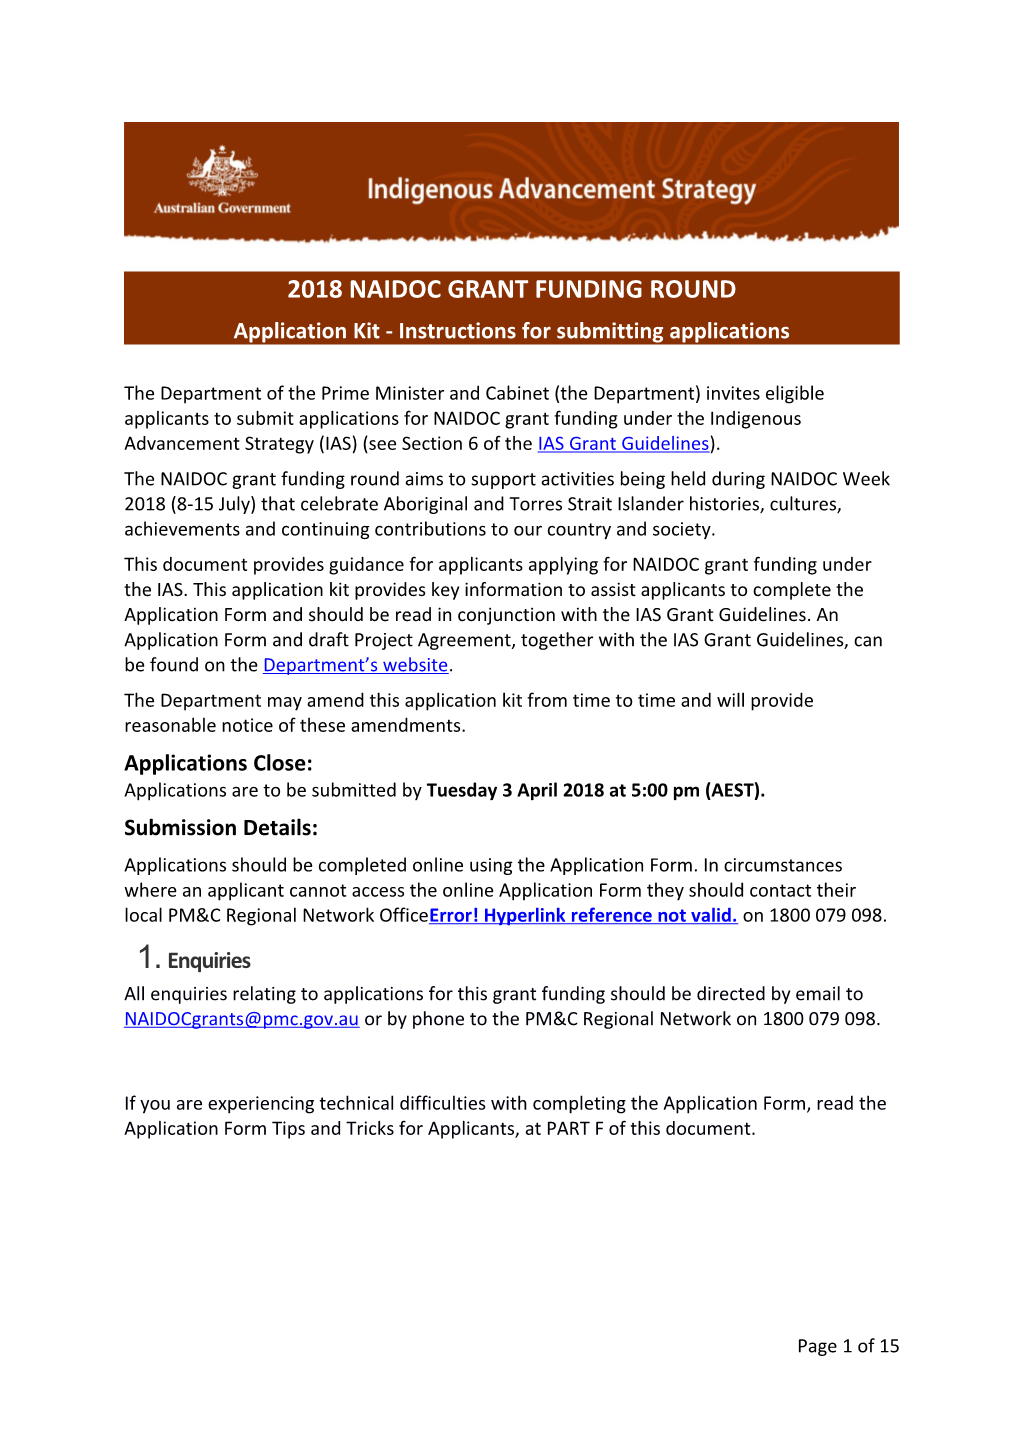 2018 NAIDOC Grant Funding Round